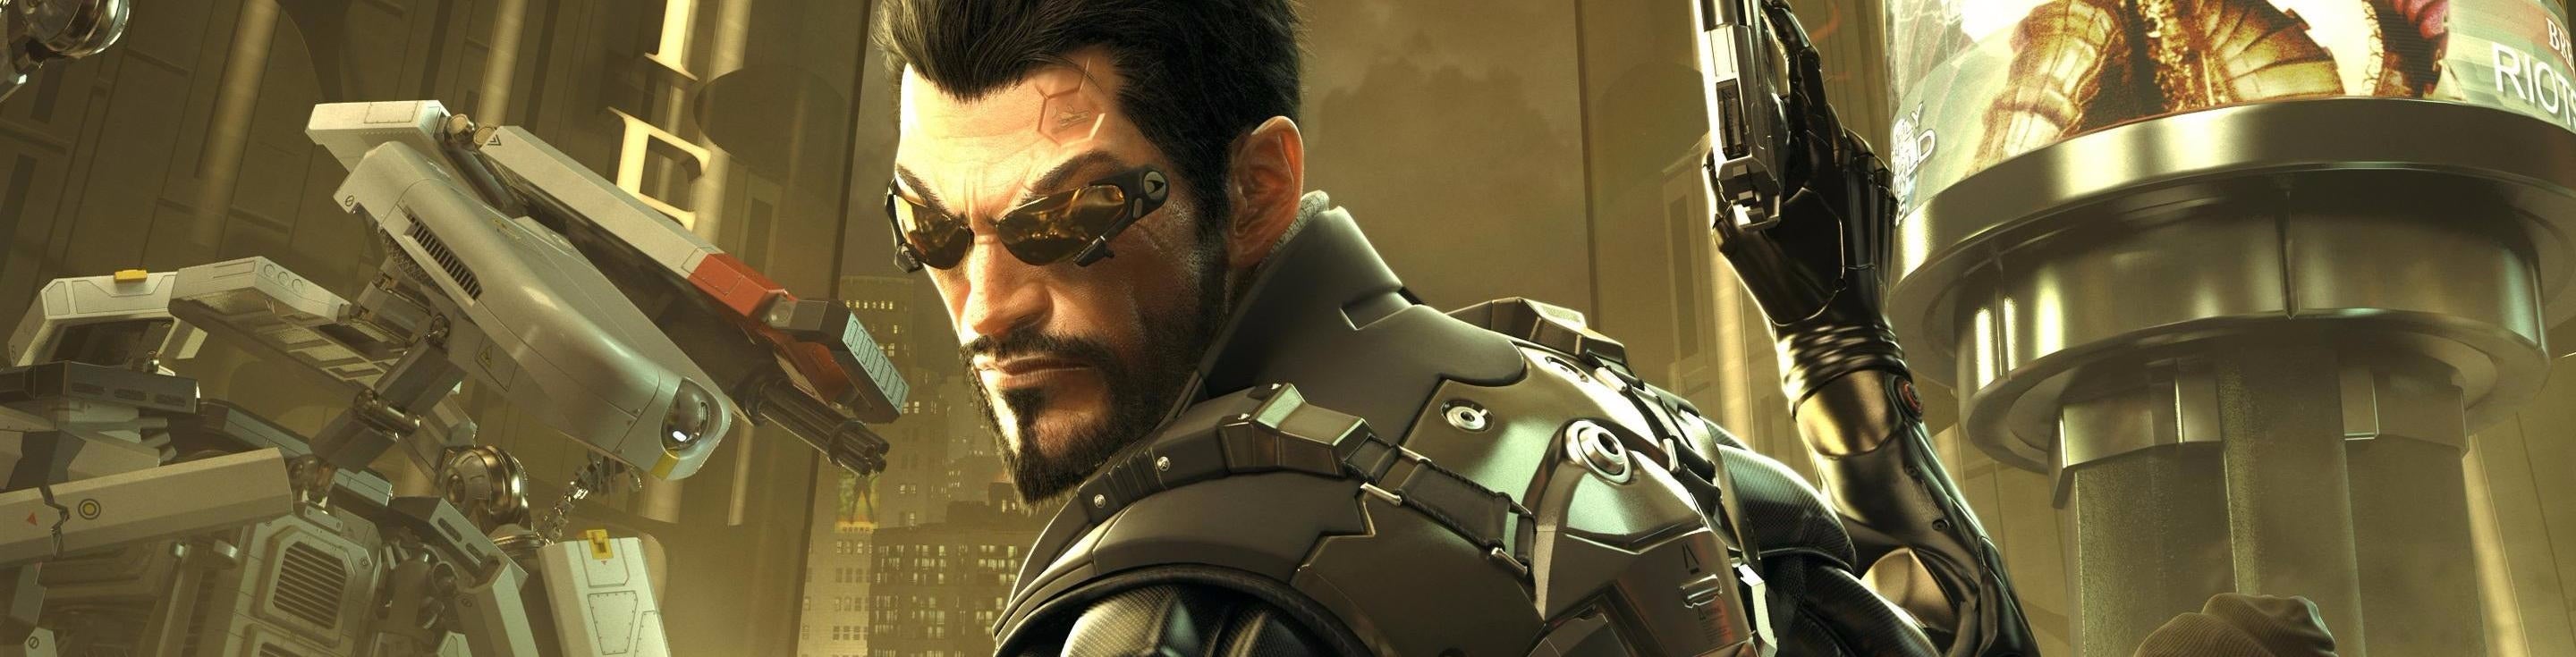 Imagen para El futuro de la franquicia Deus Ex está en su pasado